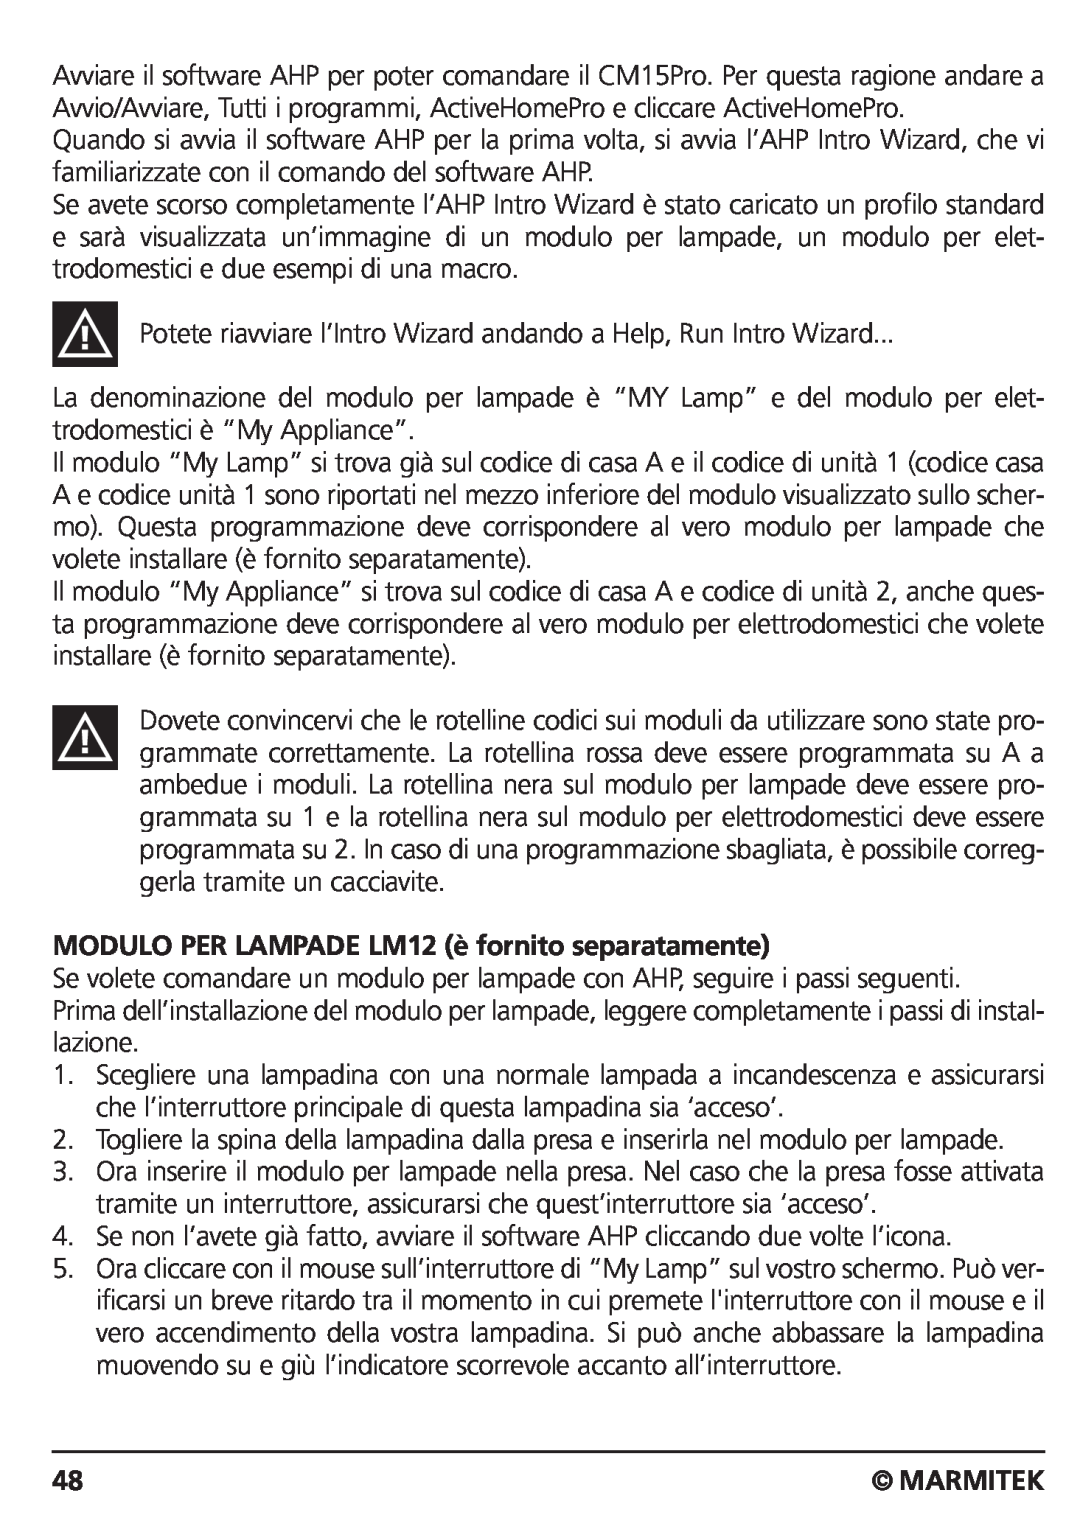 Marmitek CM15PRO manual MODULO PER LAMPADE LM12 è fornito separatamente, Marmitek 